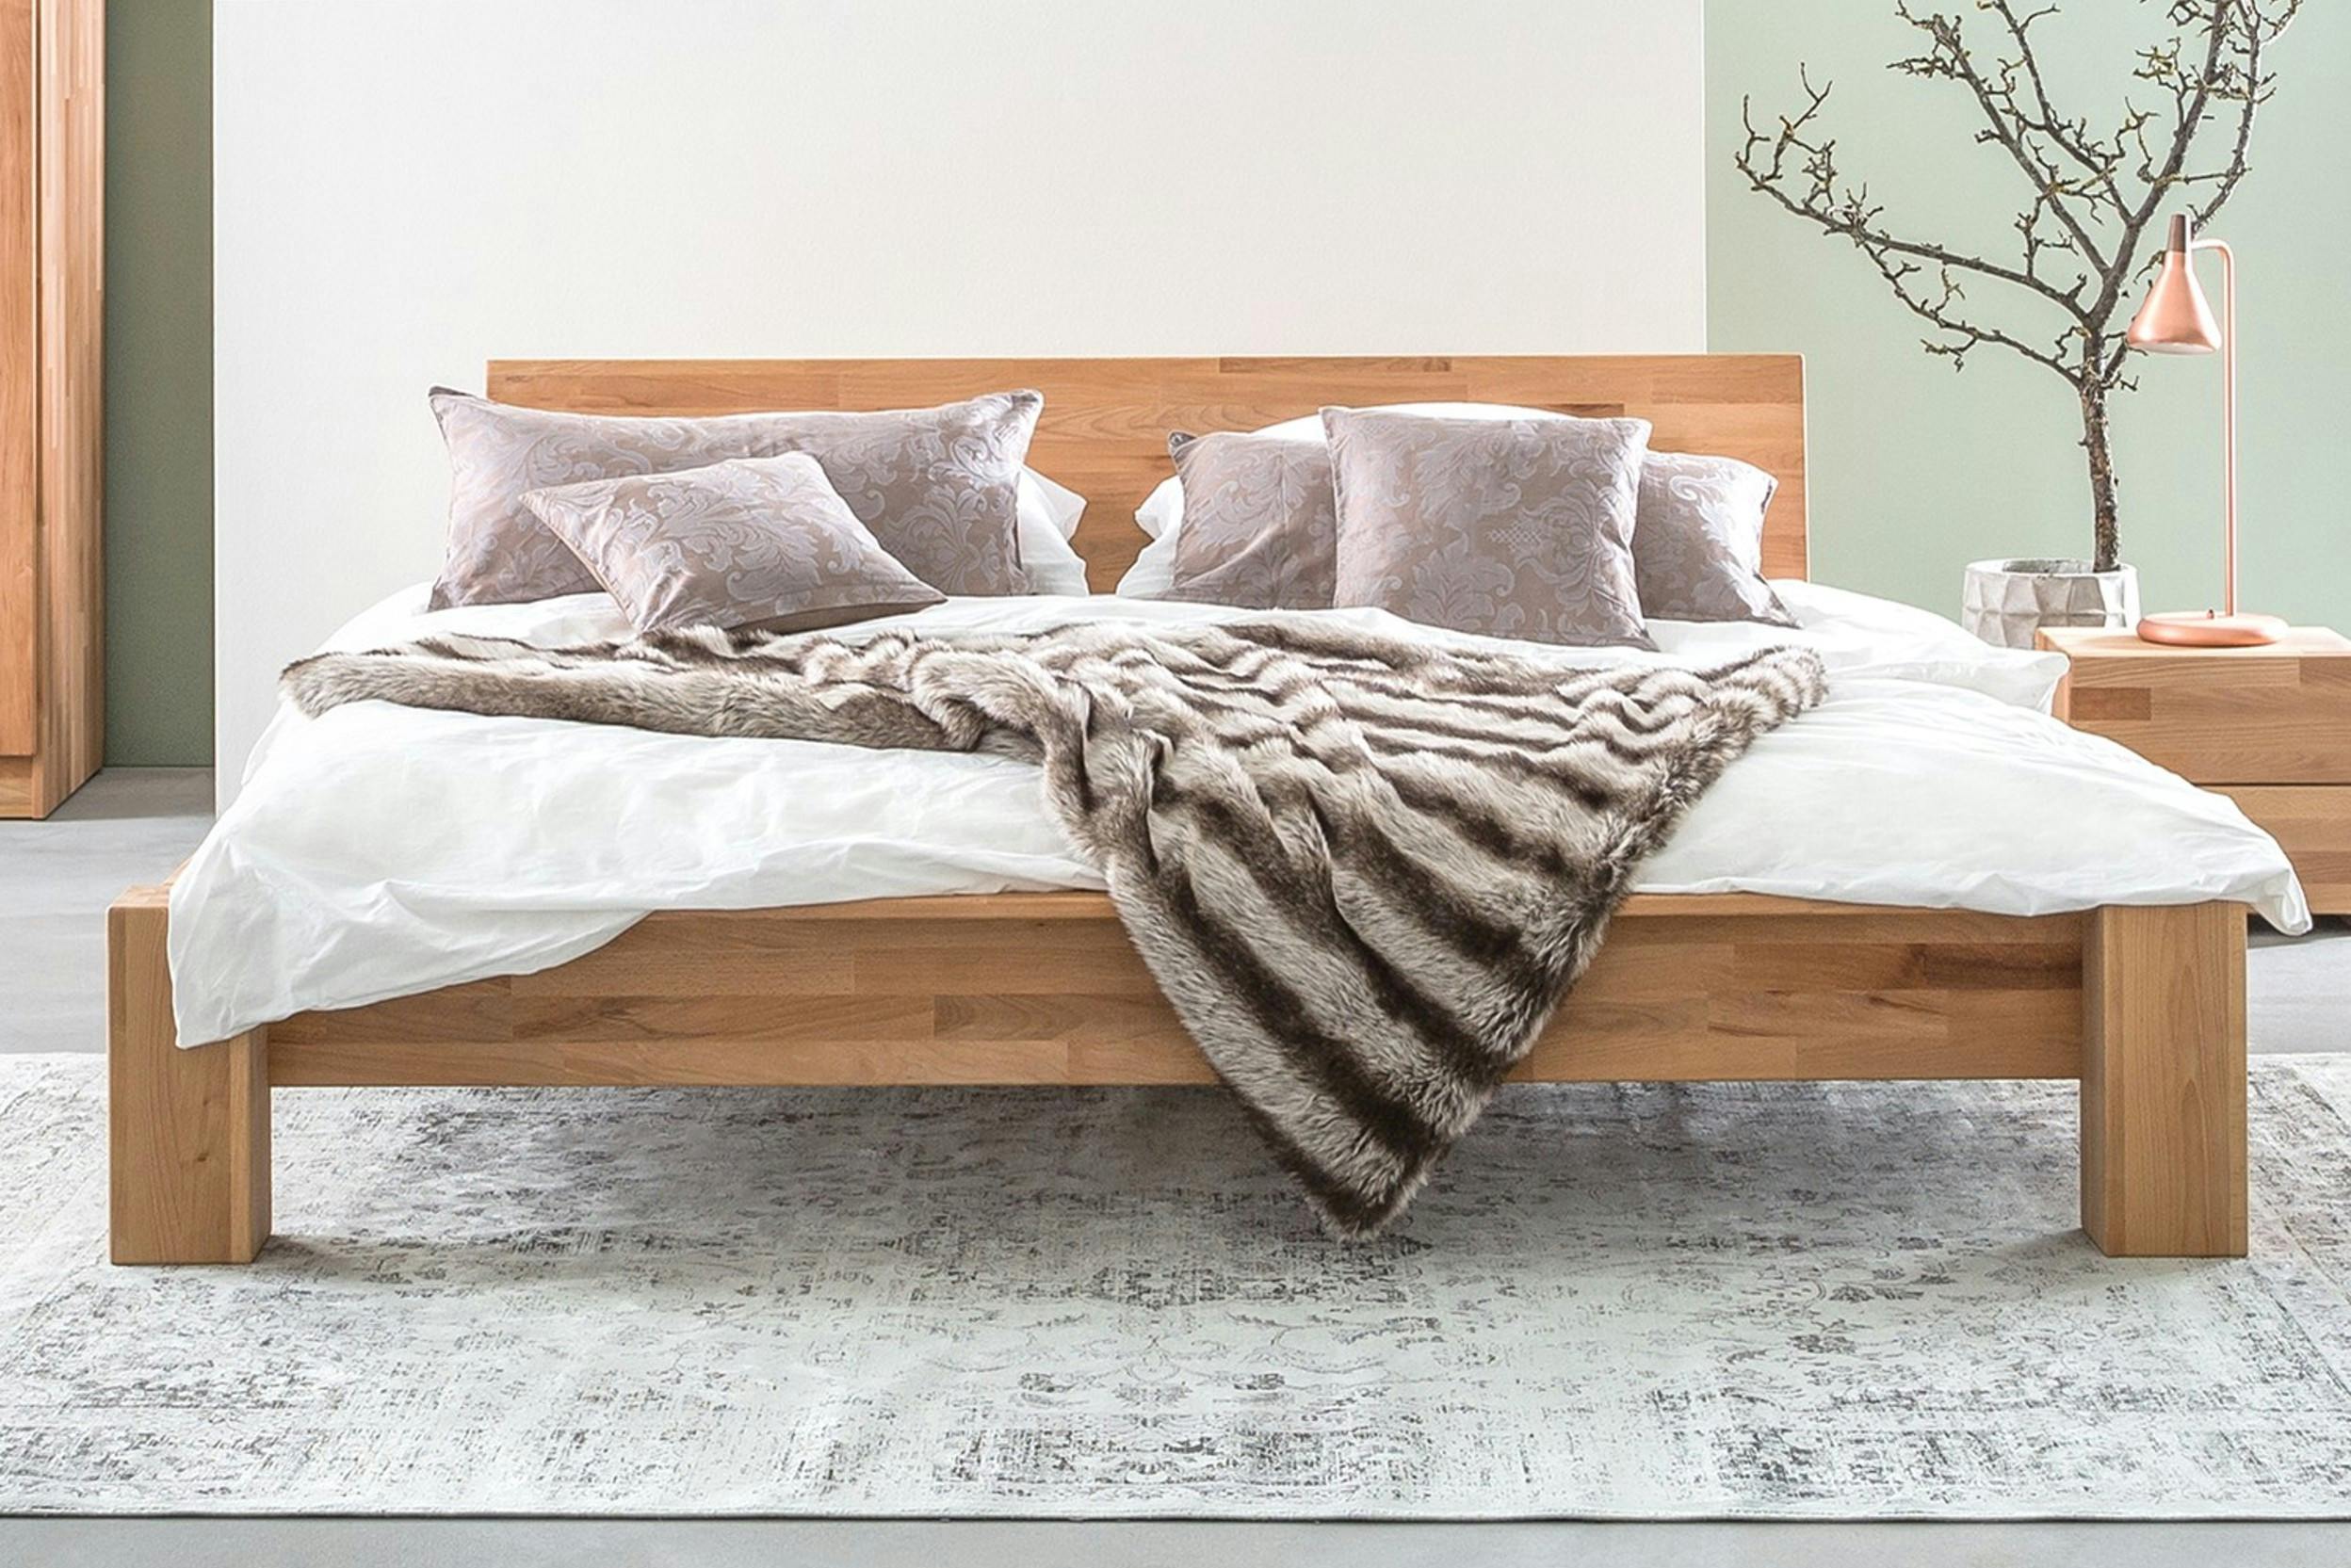 Houten futonbed met hoofdbord van hout, opgemaakt met grijze kussens en wit dekbedovertrek.